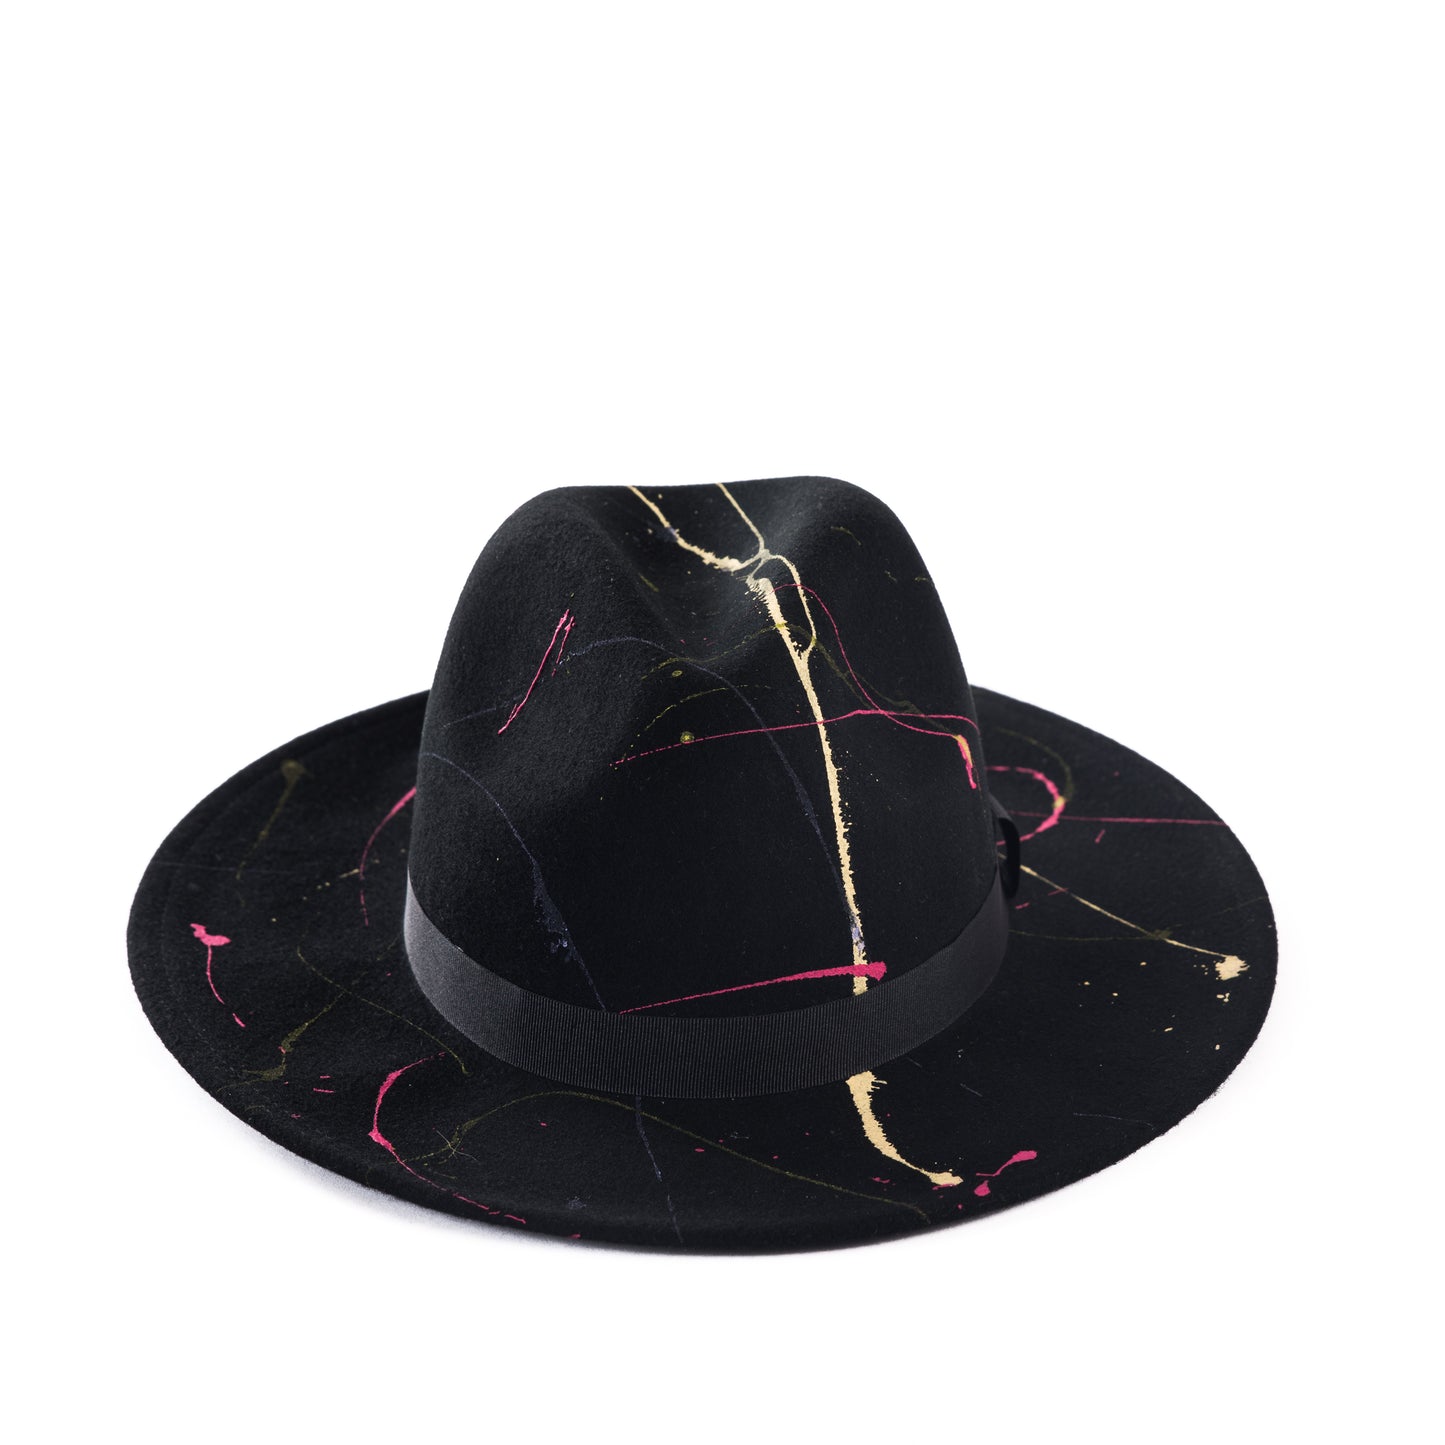 ‘Tokyo Lights’ Hat For Her